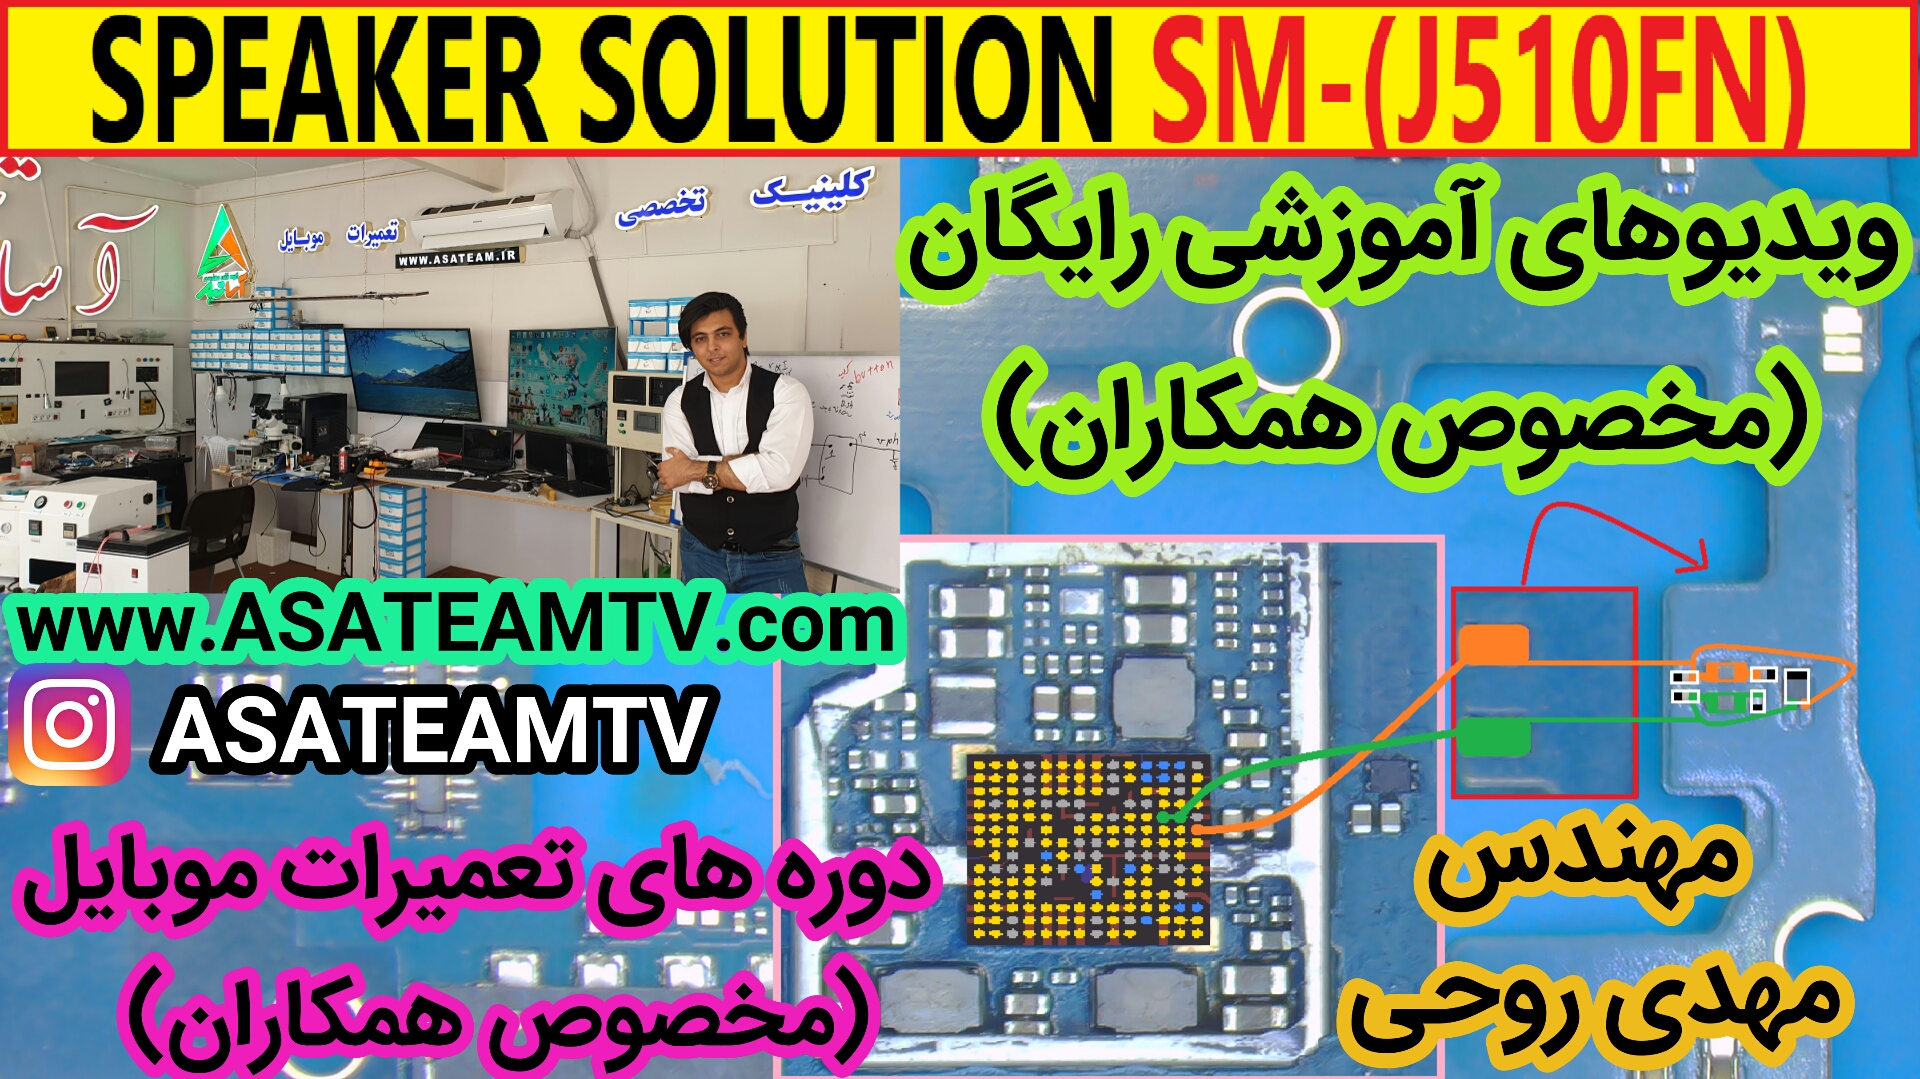 SPEAKER SOLUTION J510FN